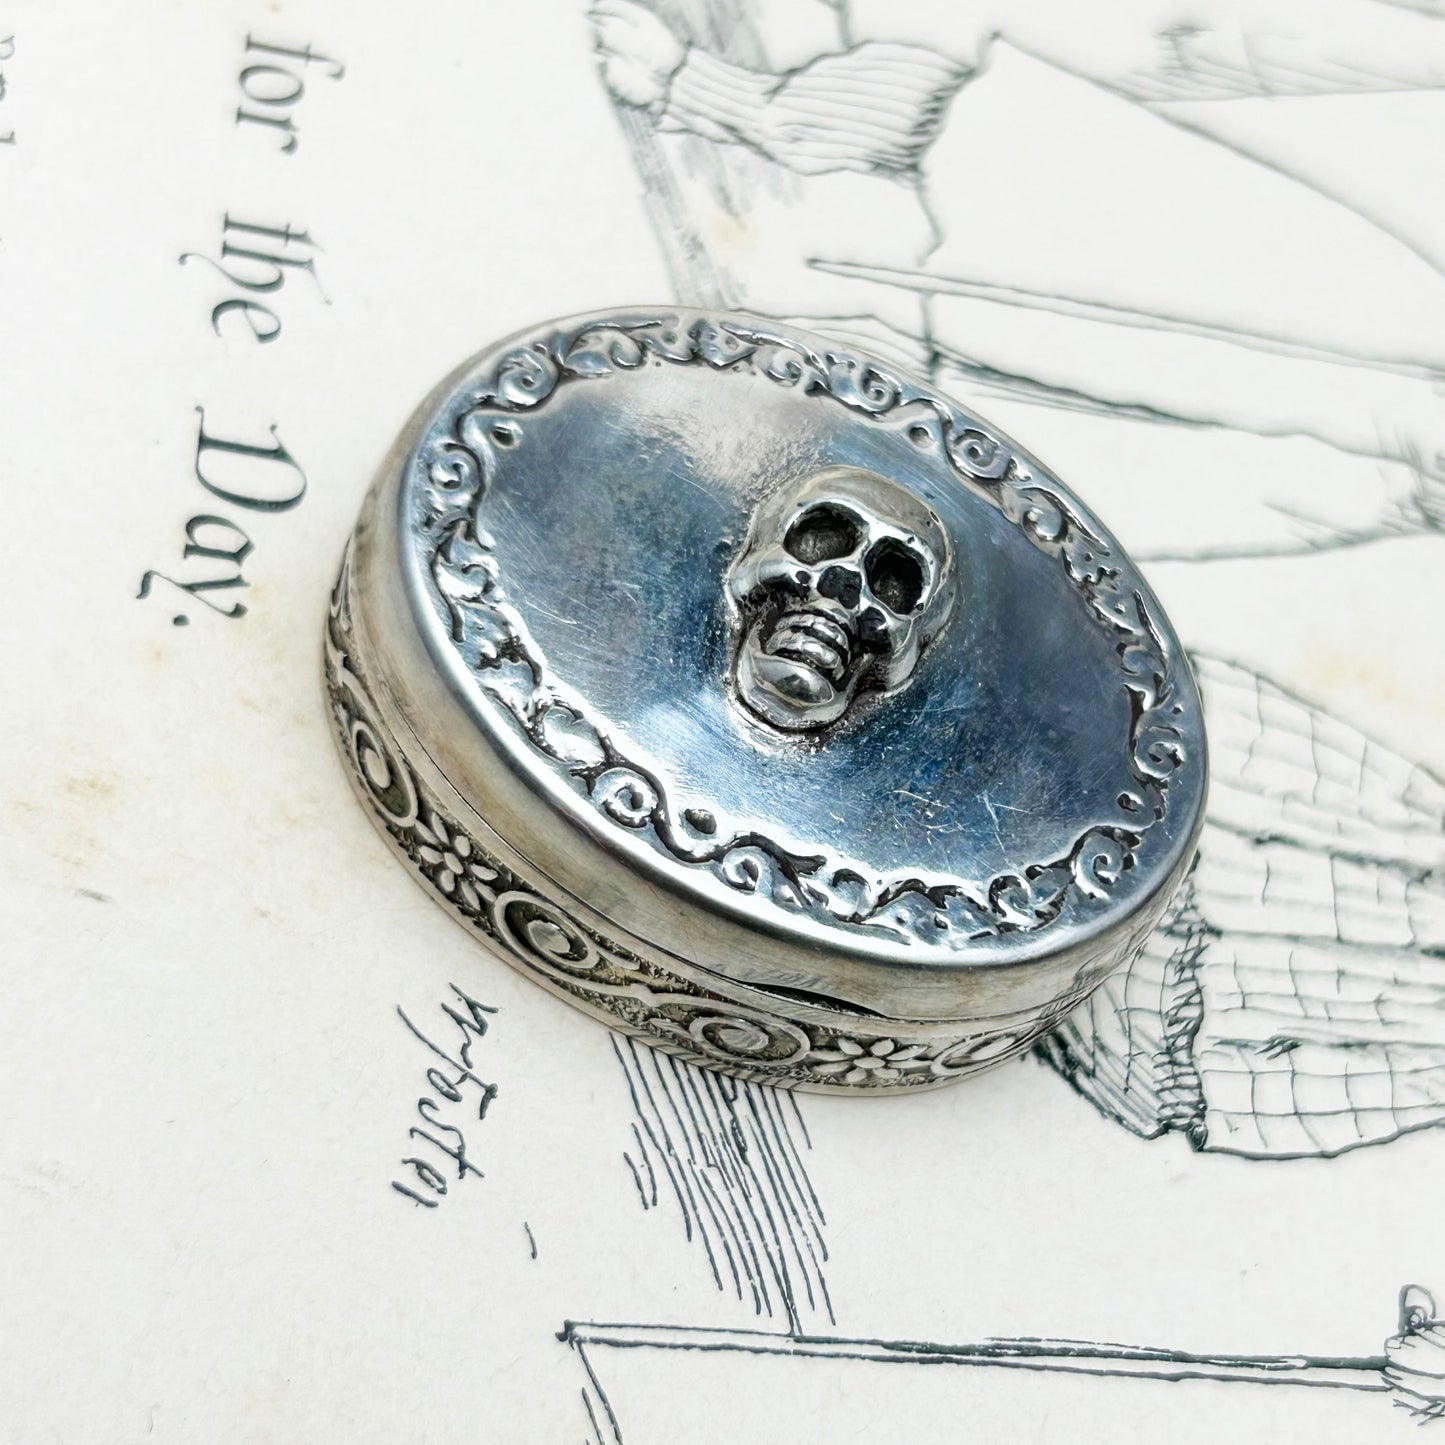 Skull Pill Box | Vintage Sterling Silver